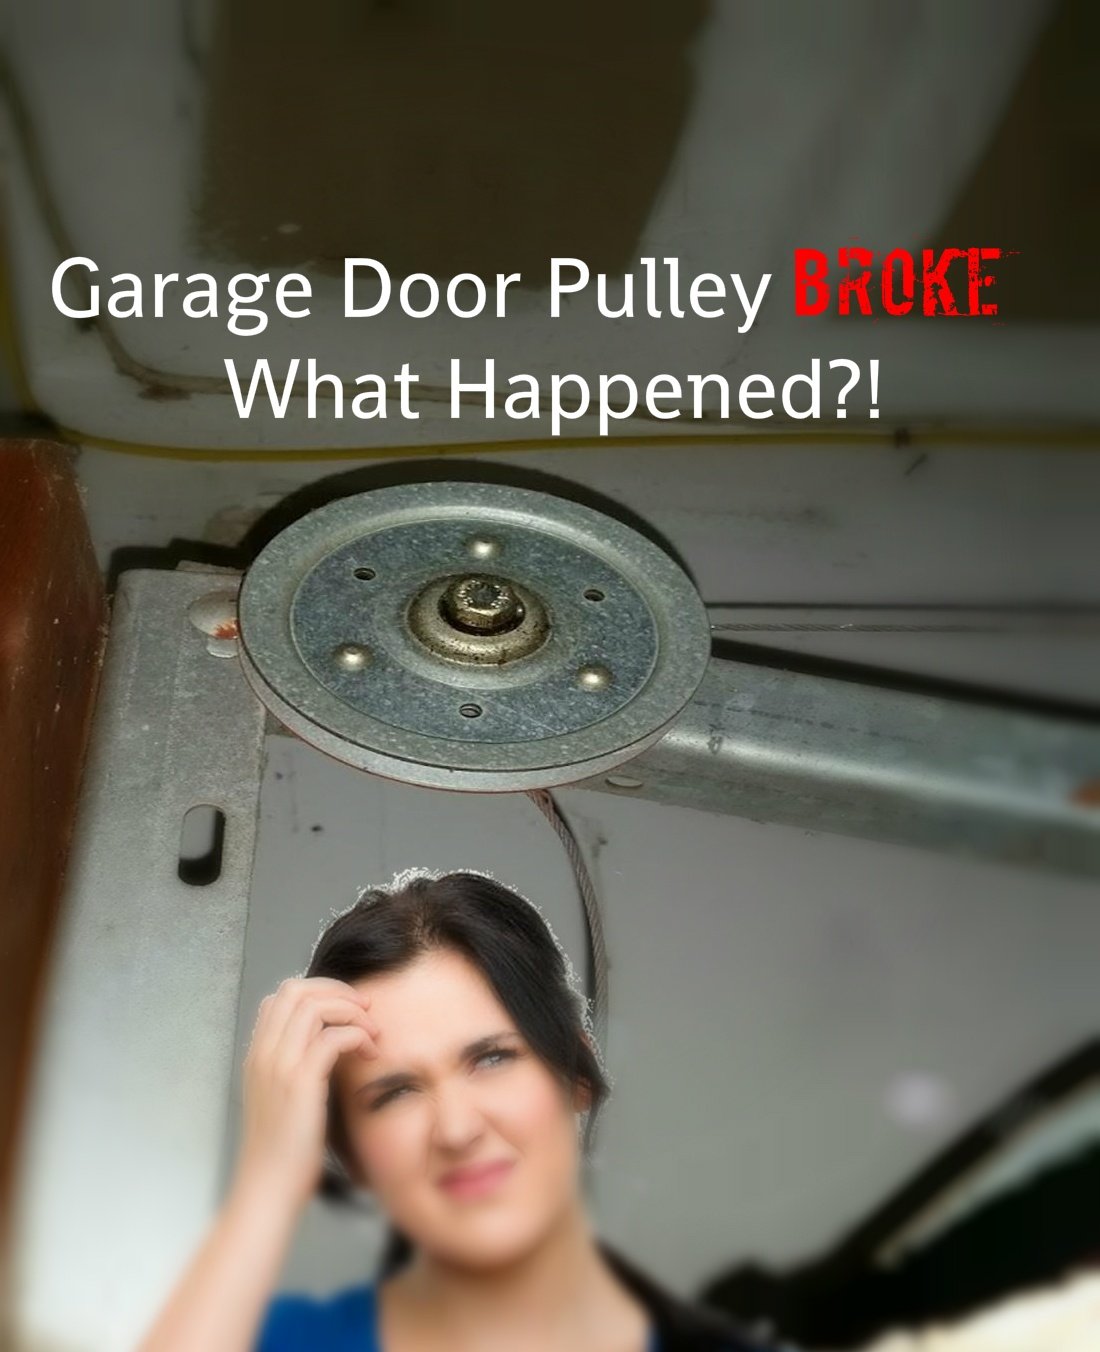 My Garage Door Pulley Broke! What Happened?!